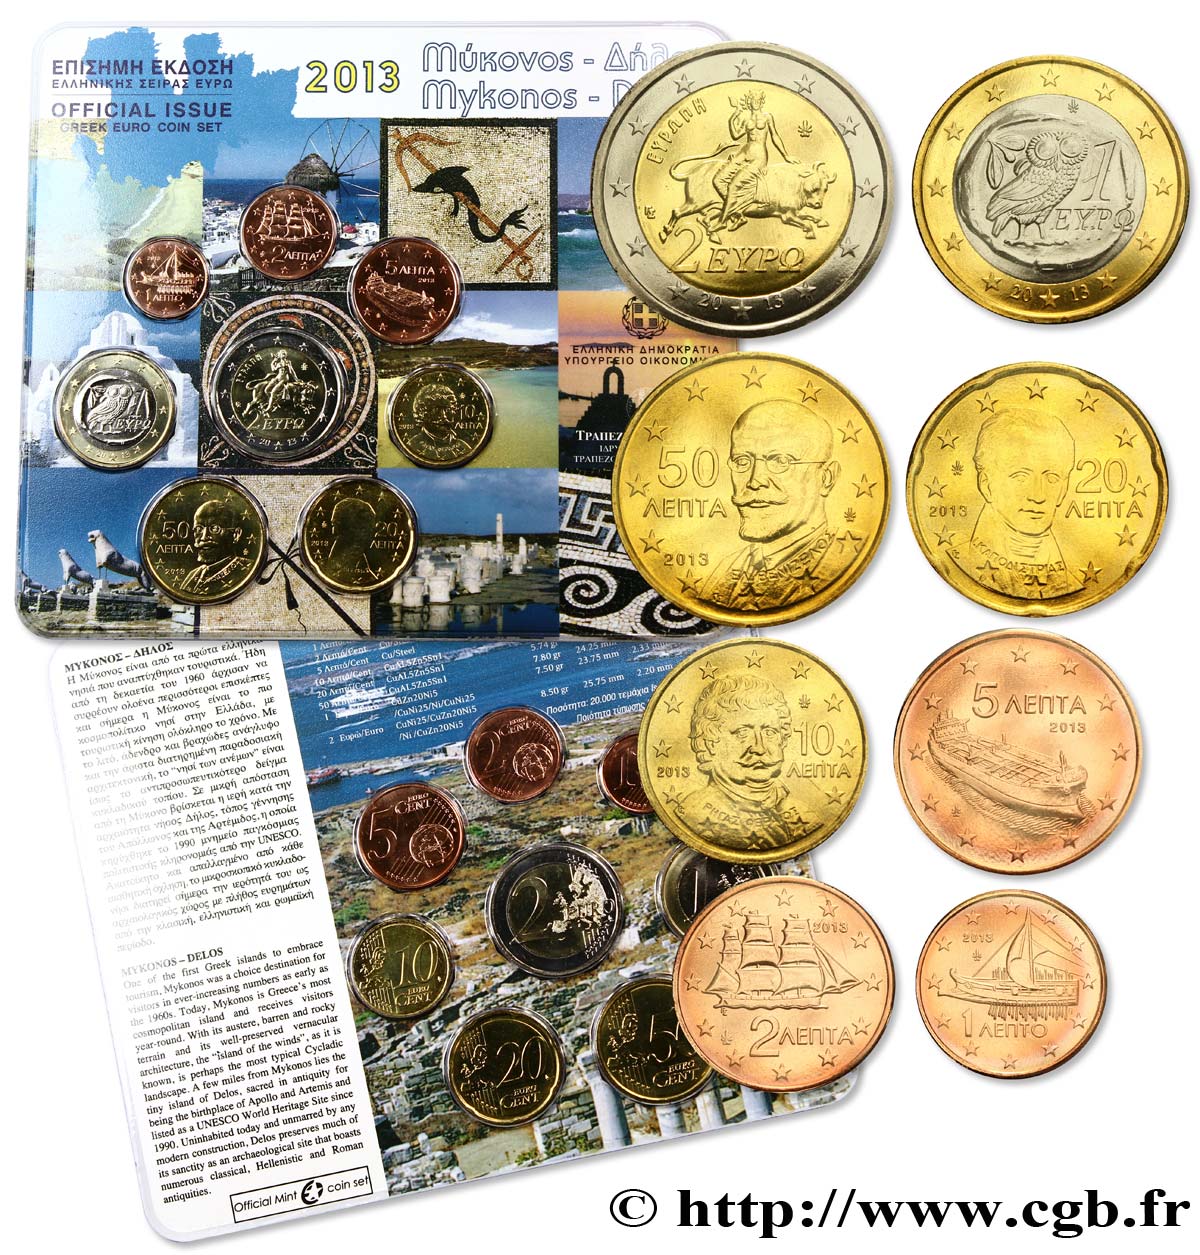 GRIECHENLAND SÉRIE Euro BRILLANT UNIVERSEL - Mykonos et Delos 2013